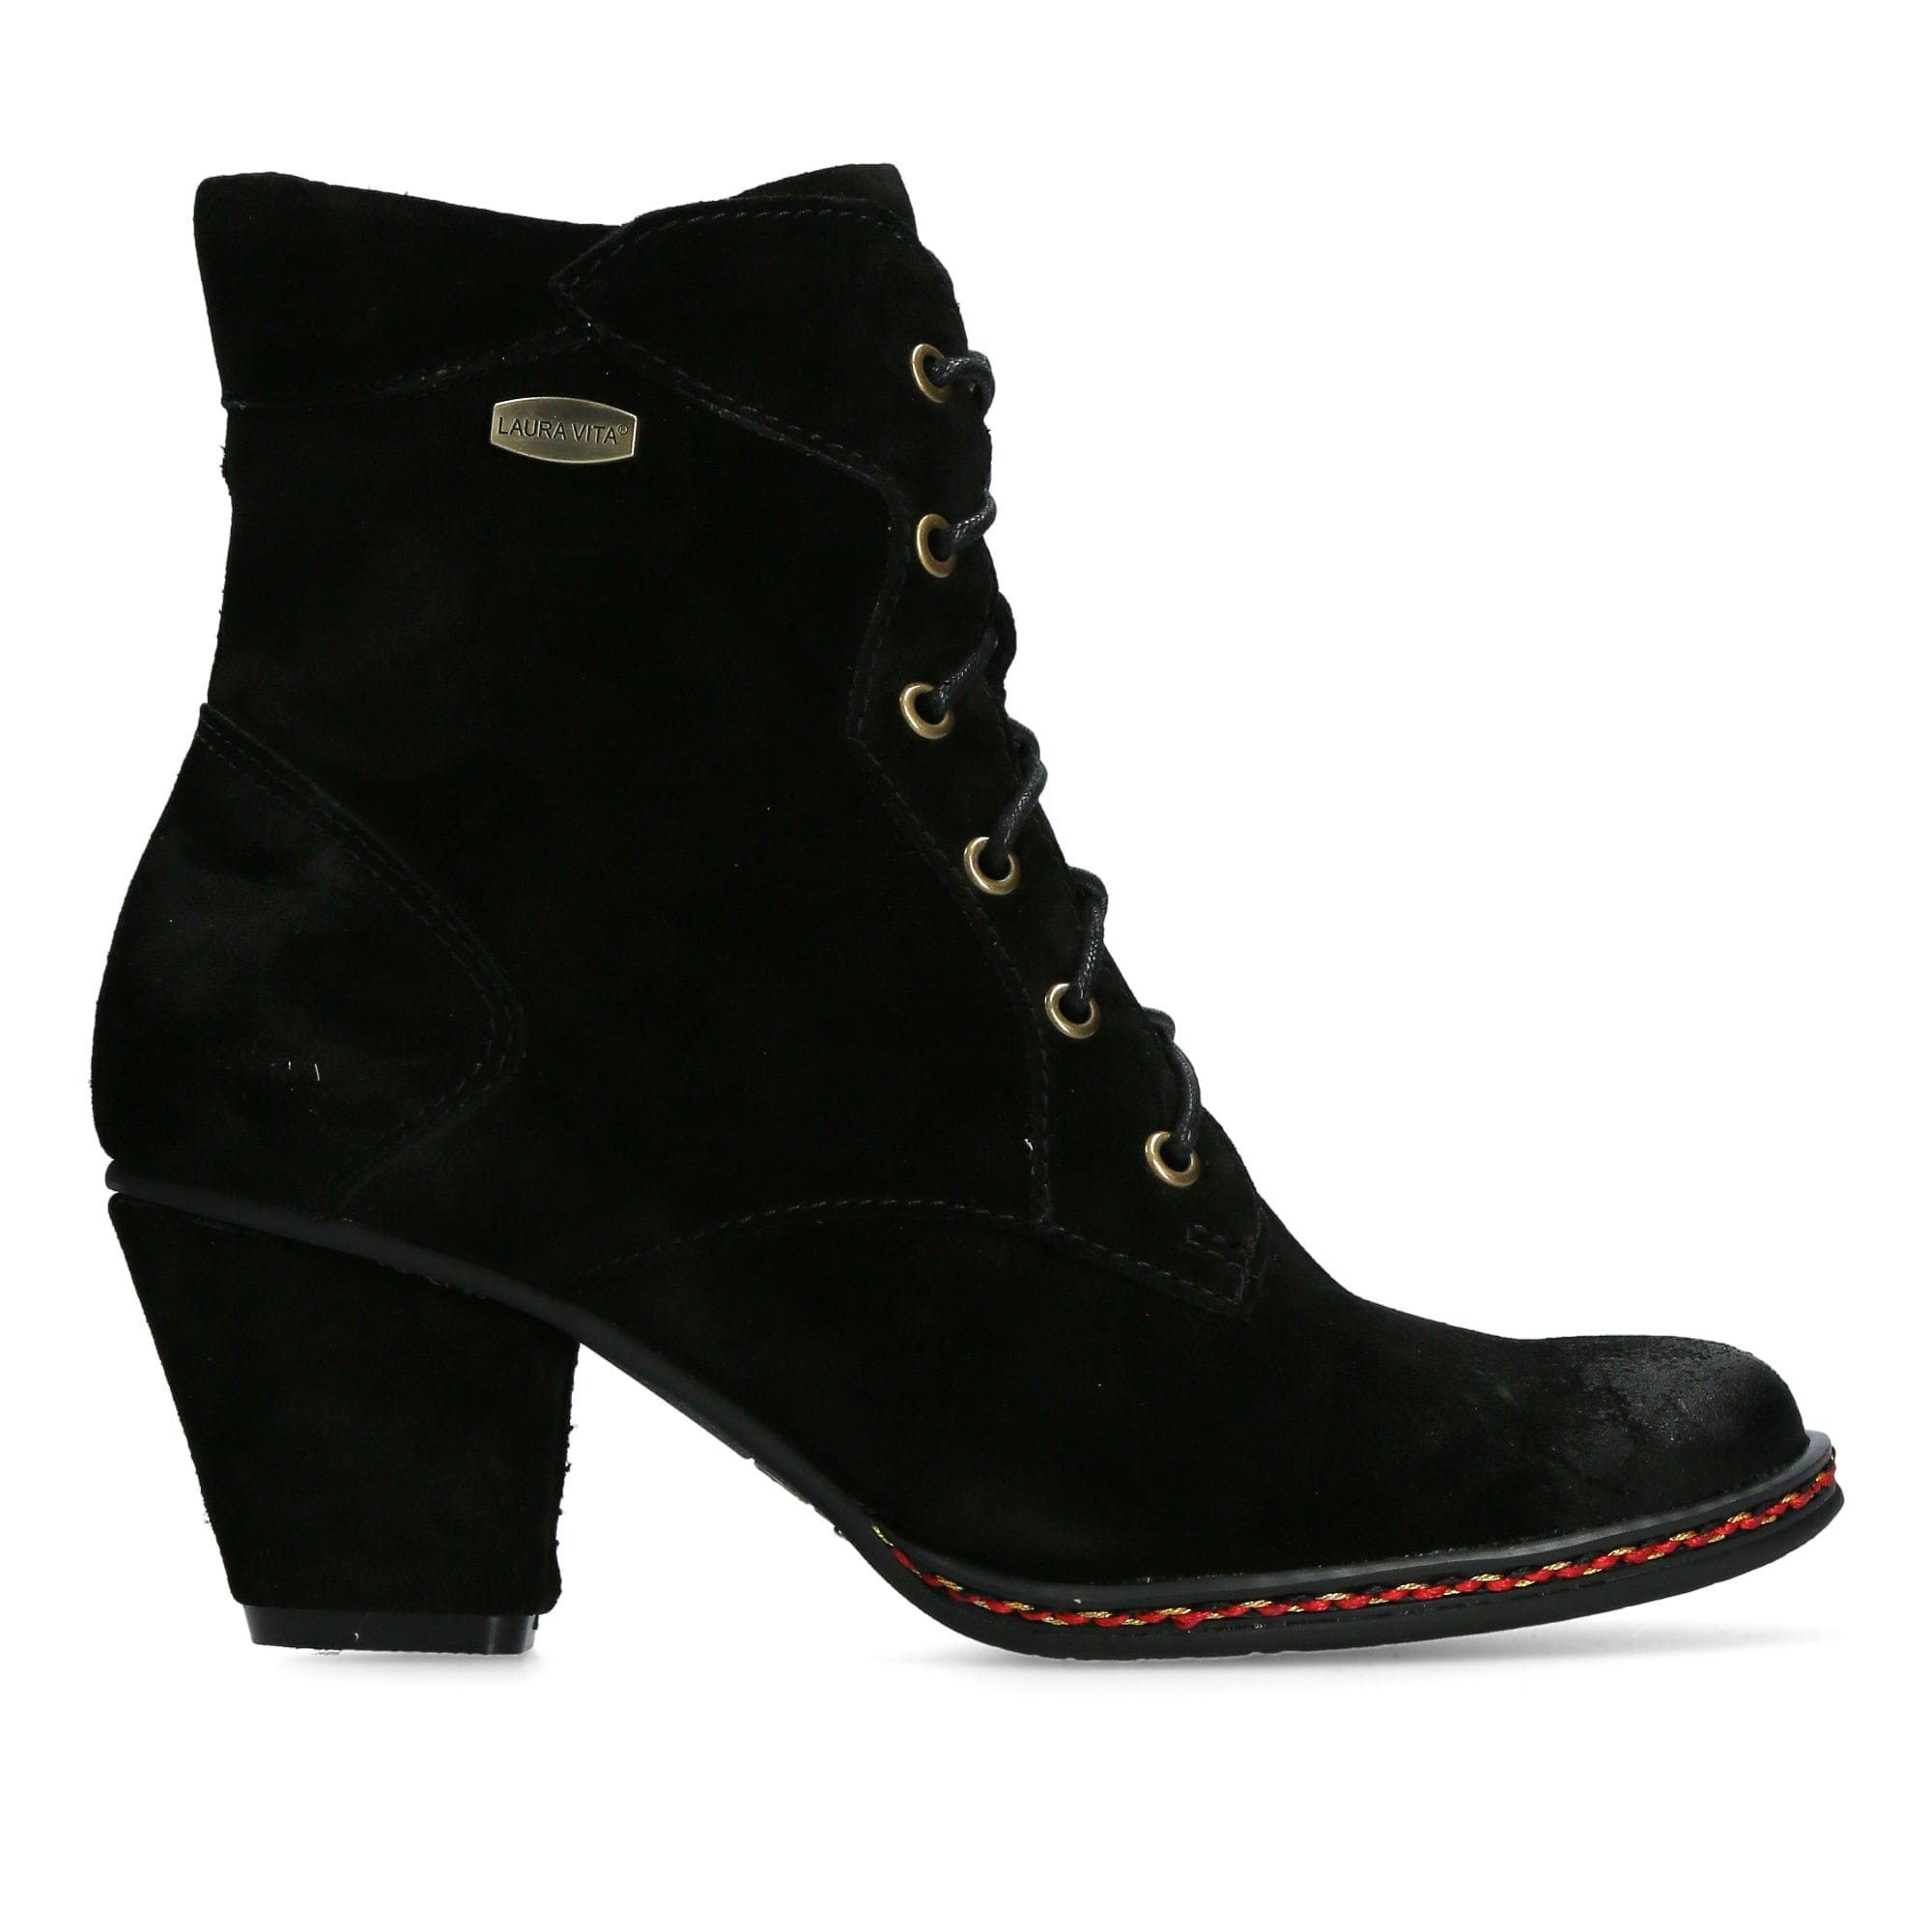 Chaussure GUCSO 26 - 35 / Noir - Boots